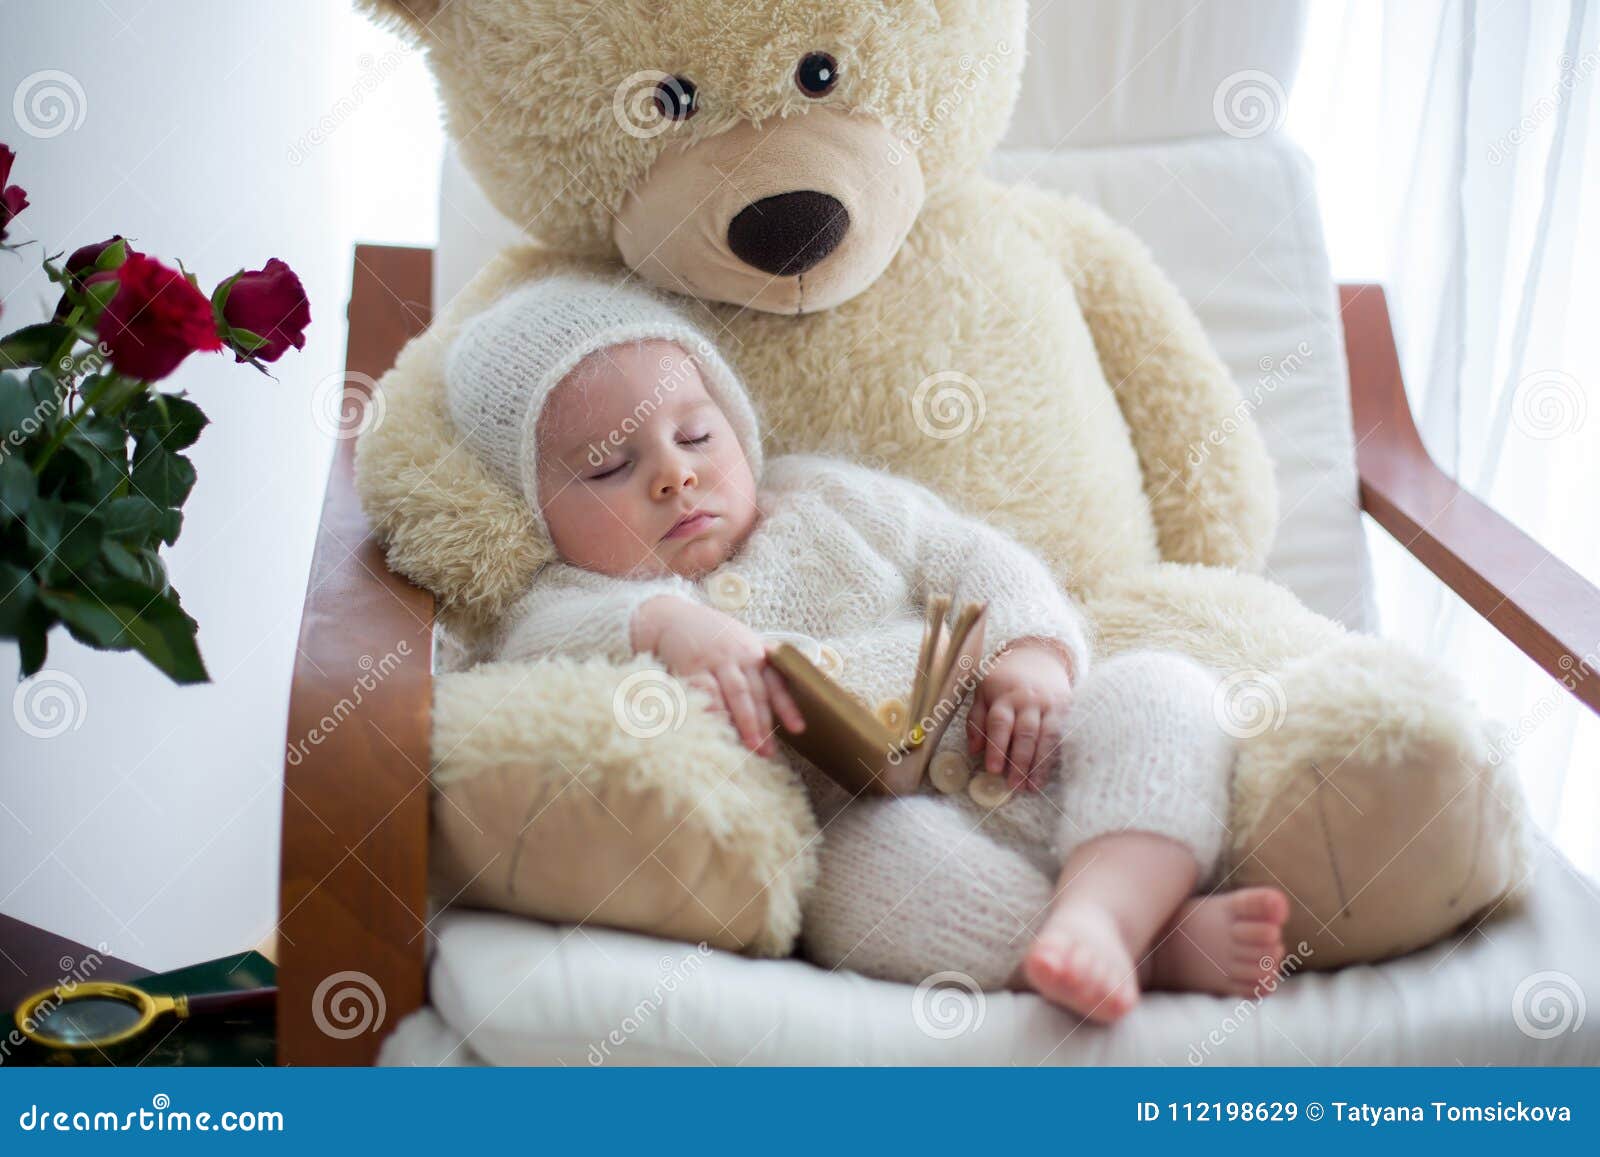 Sweet Little Baby Boy Sleeping With Huge Teddy Bear In Big Armchair Stock Image Image Of Baby Gift